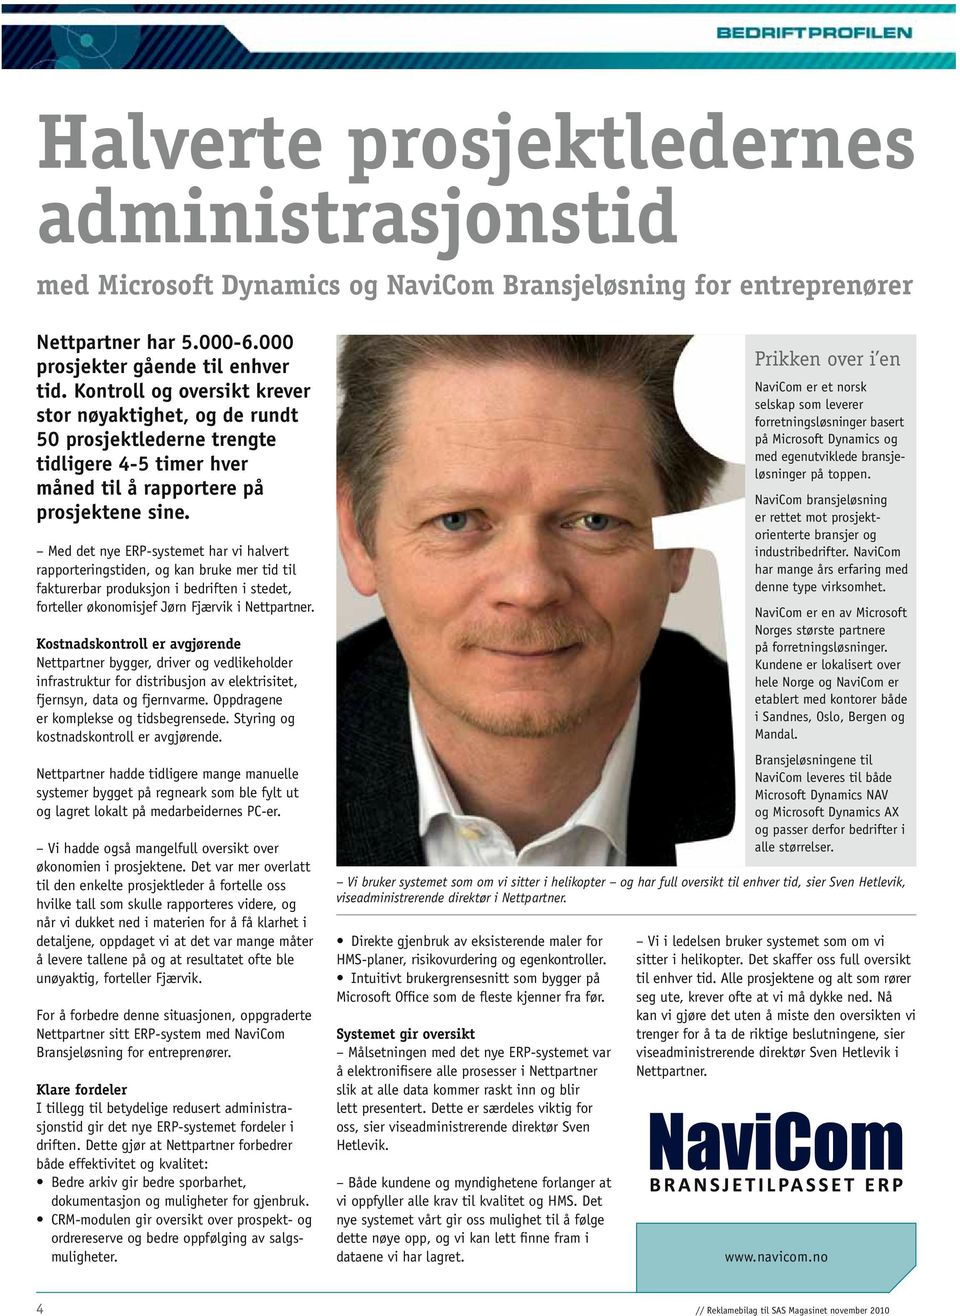 Med det nye ERP-systemet har vi halvert rapporteringstiden, og kan bruke mer tid til fakturerbar produksjon i bedriften i stedet, forteller økonomisjef Jørn Fjærvik i Nettpartner.